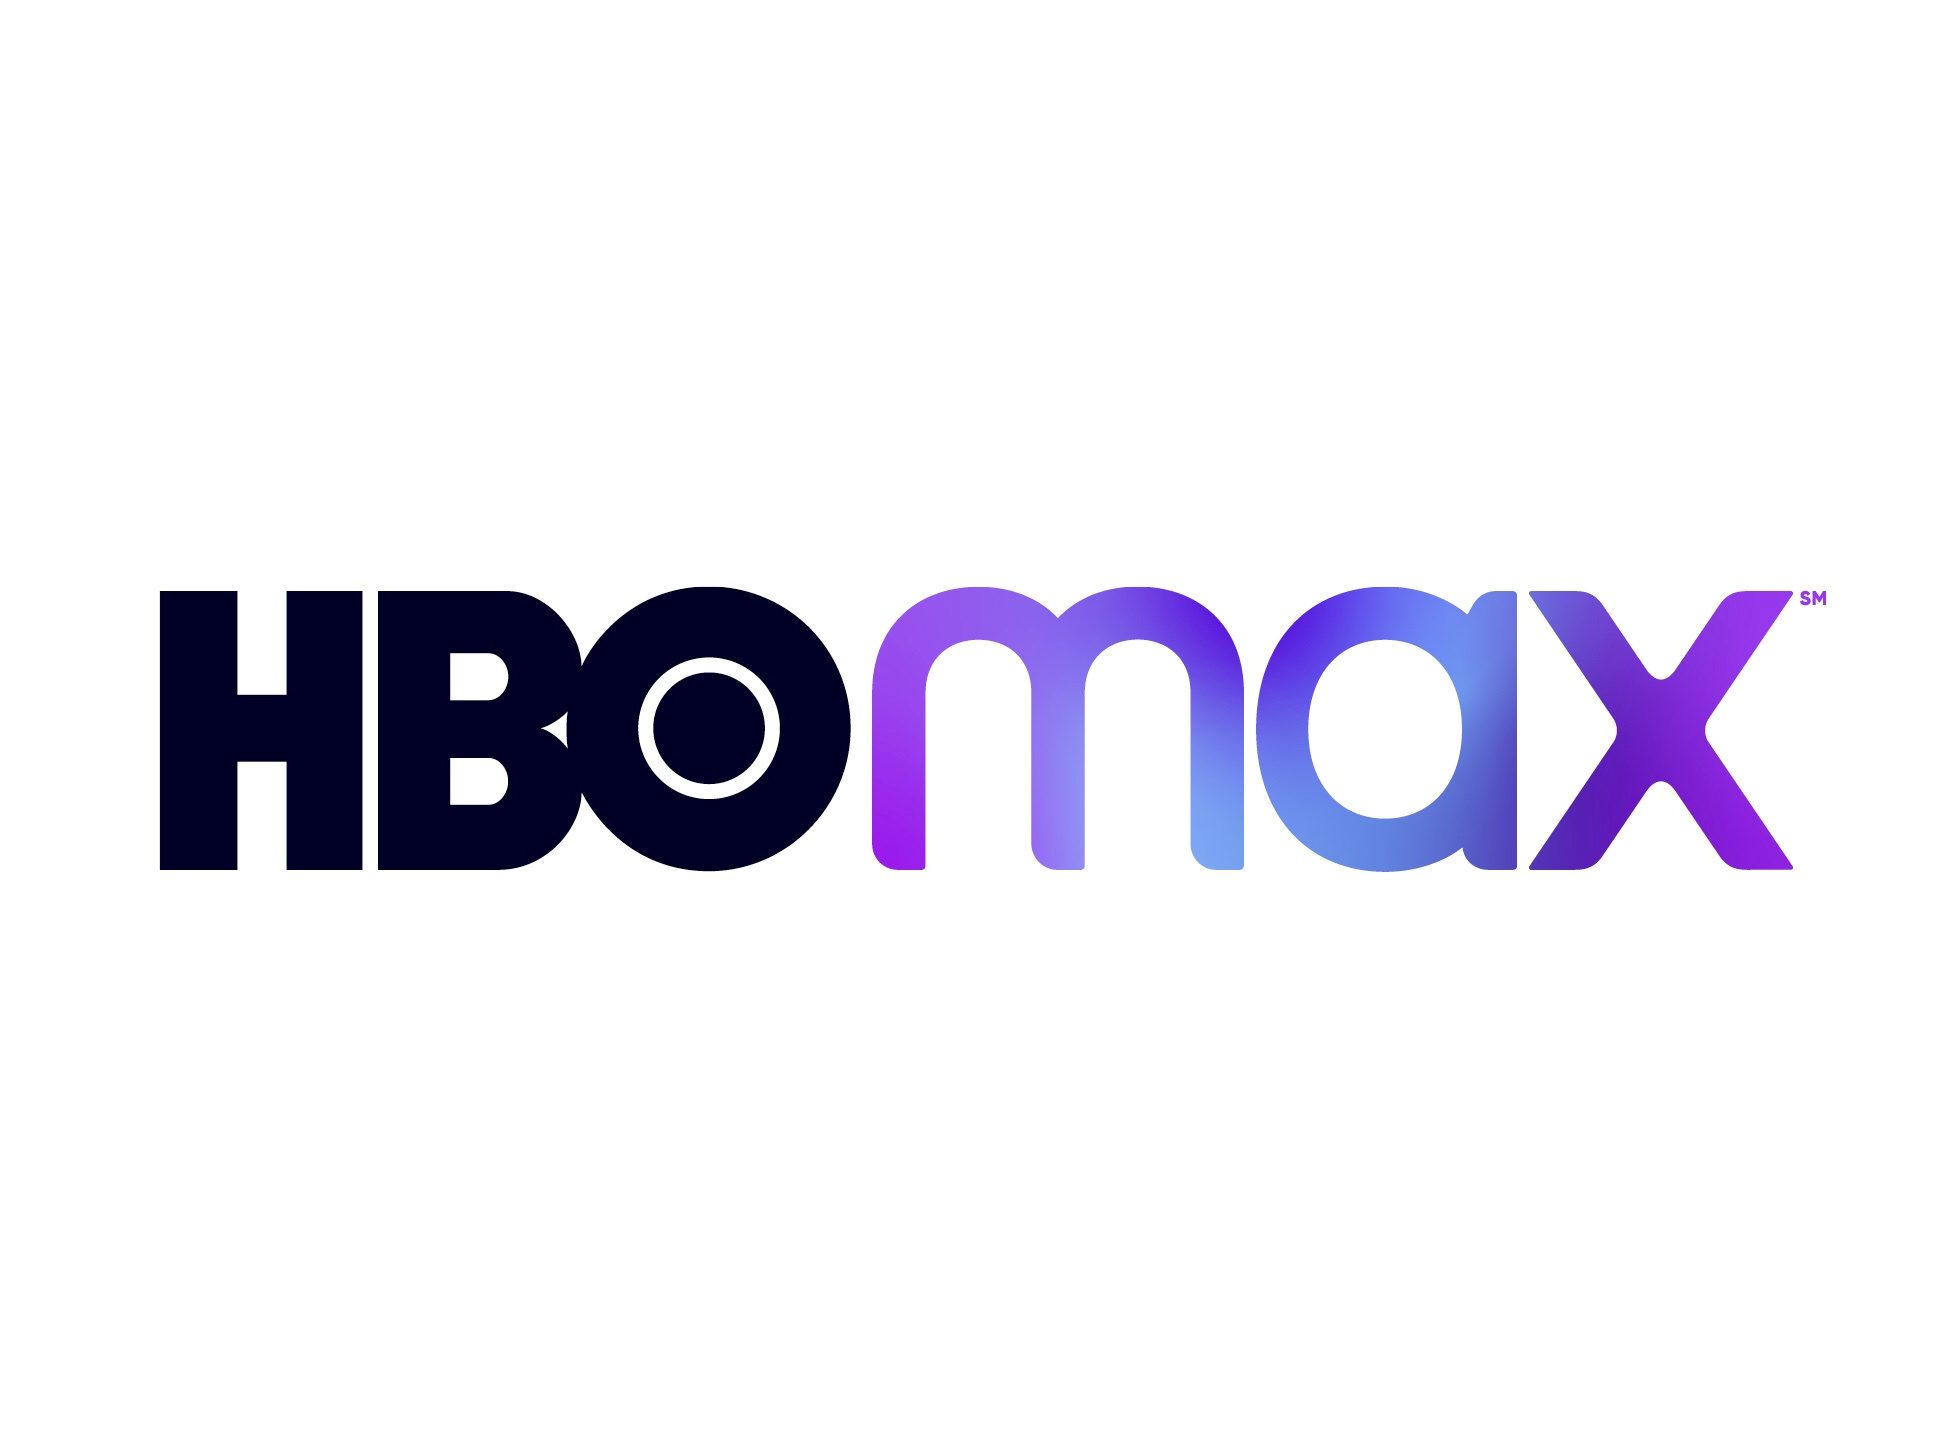 HBO Max España